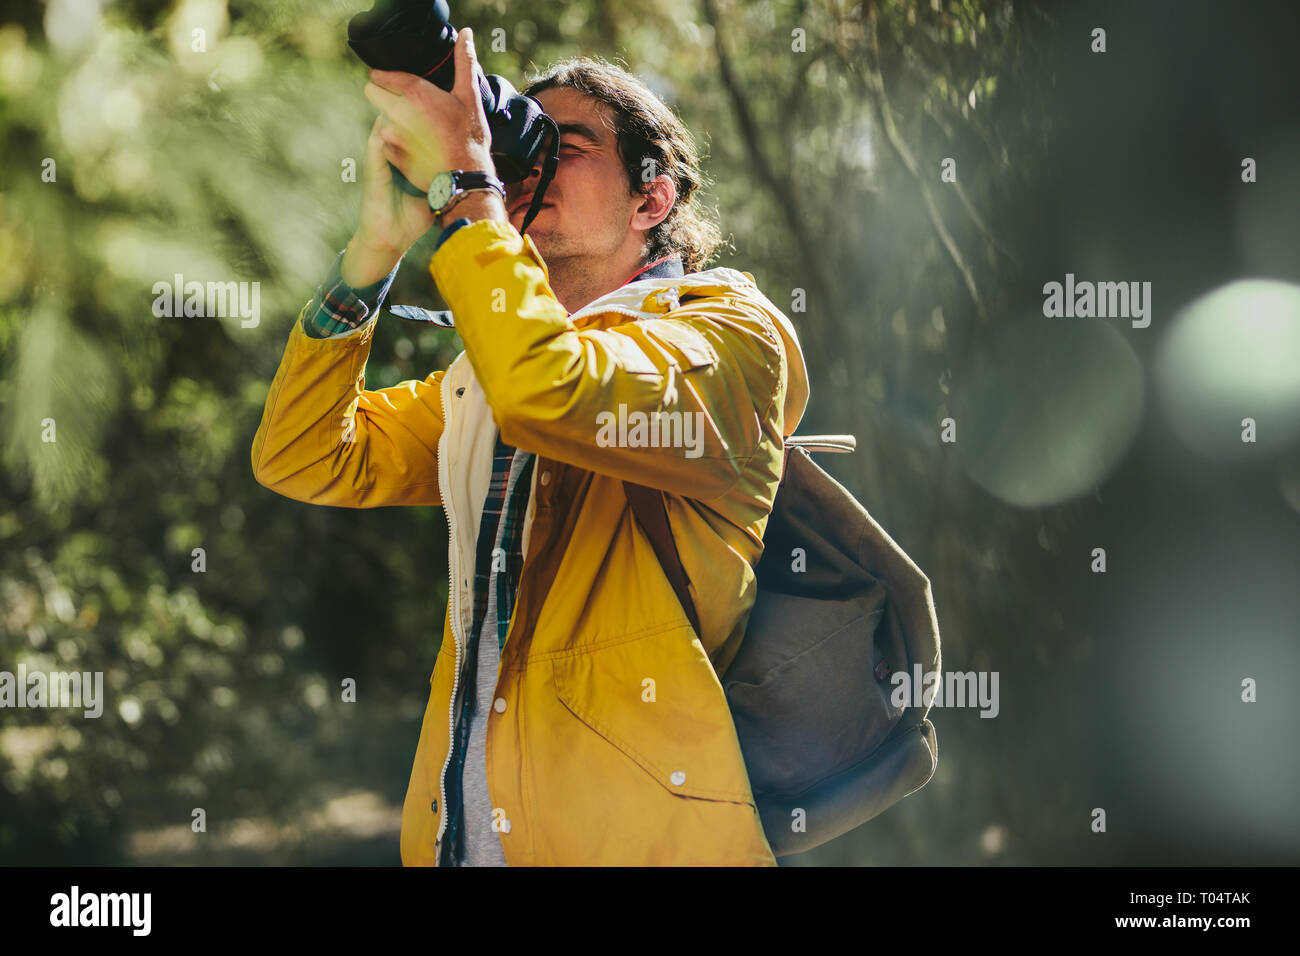 Retrato de un explorador para tomar fotos de la naturaleza de pie en un bosque. El fotógrafo llevaba chaqueta y mochila haciendo fotografía de naturaleza. Foto de stock